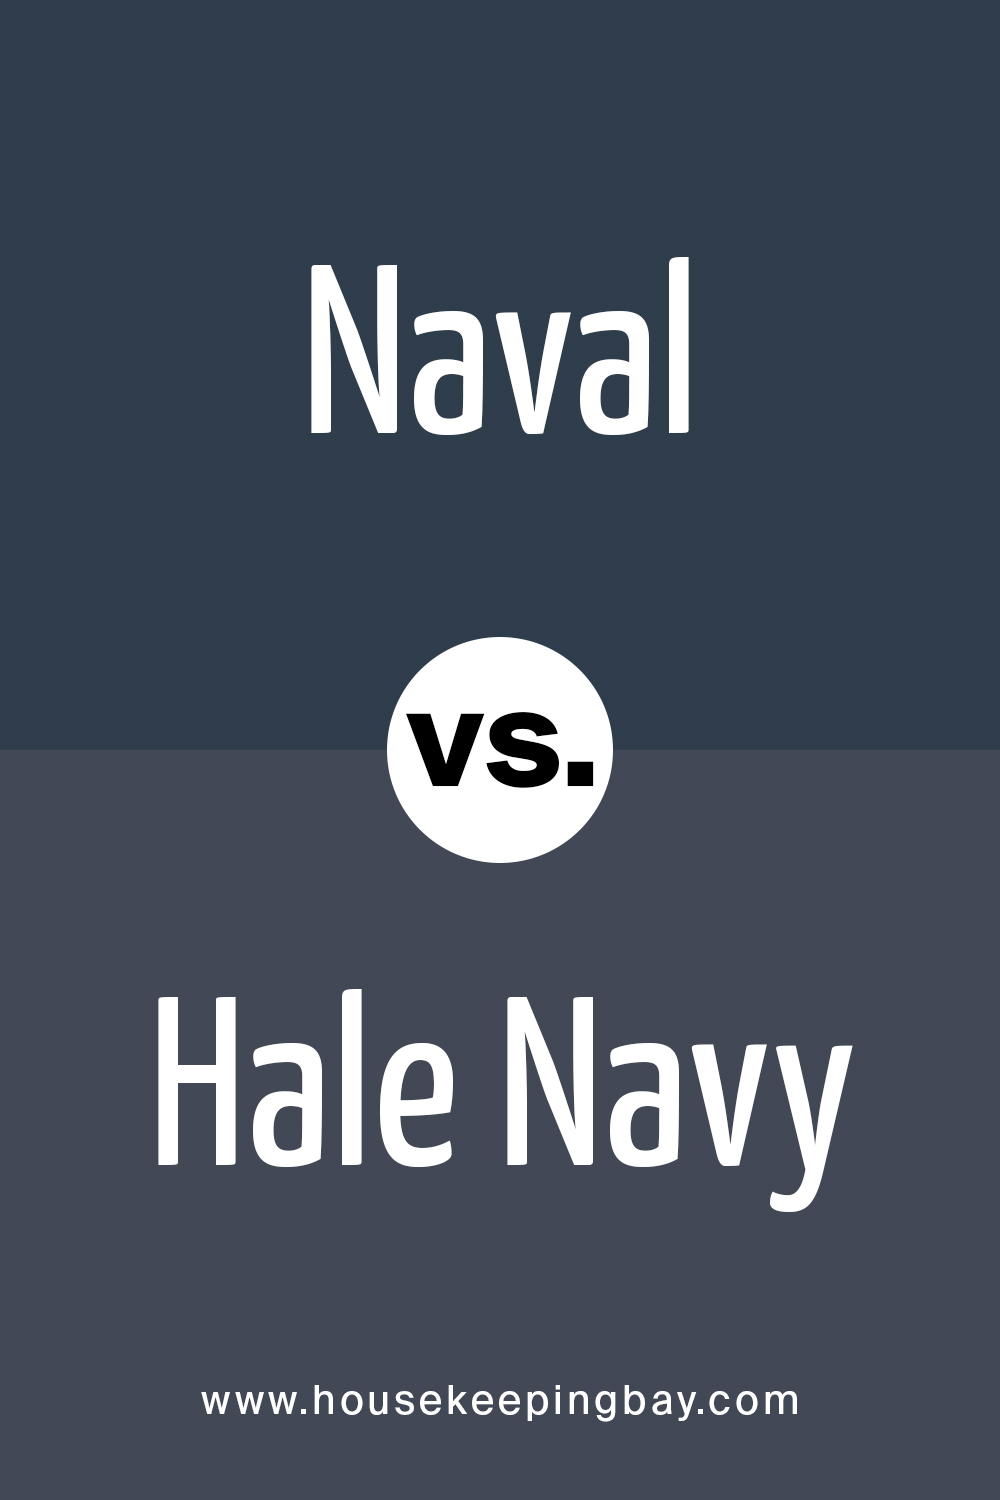 Naval VS Hale Navy